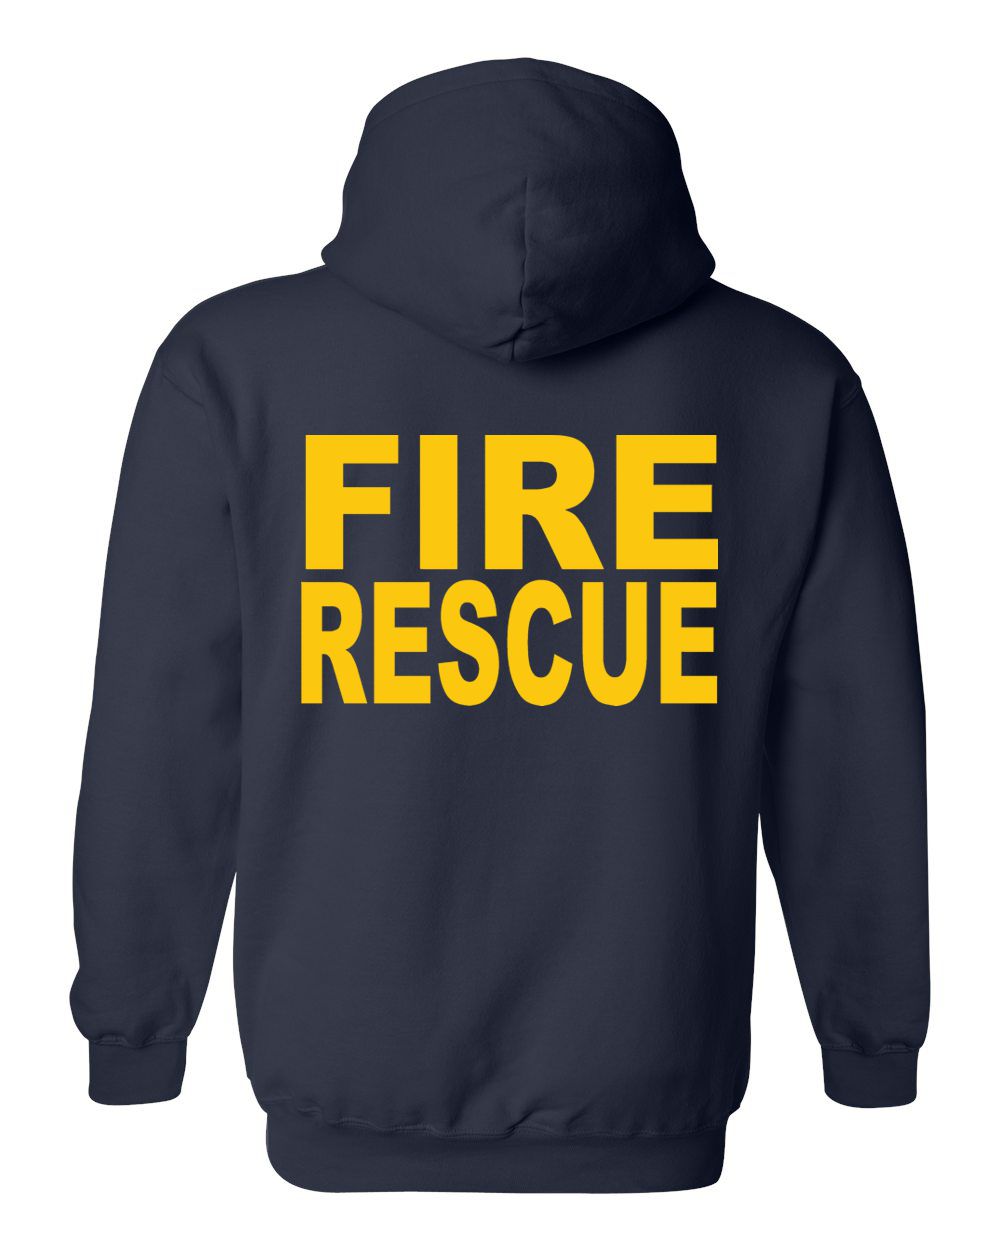 Atlas Fire & Rescue Hooded Sweatshirt